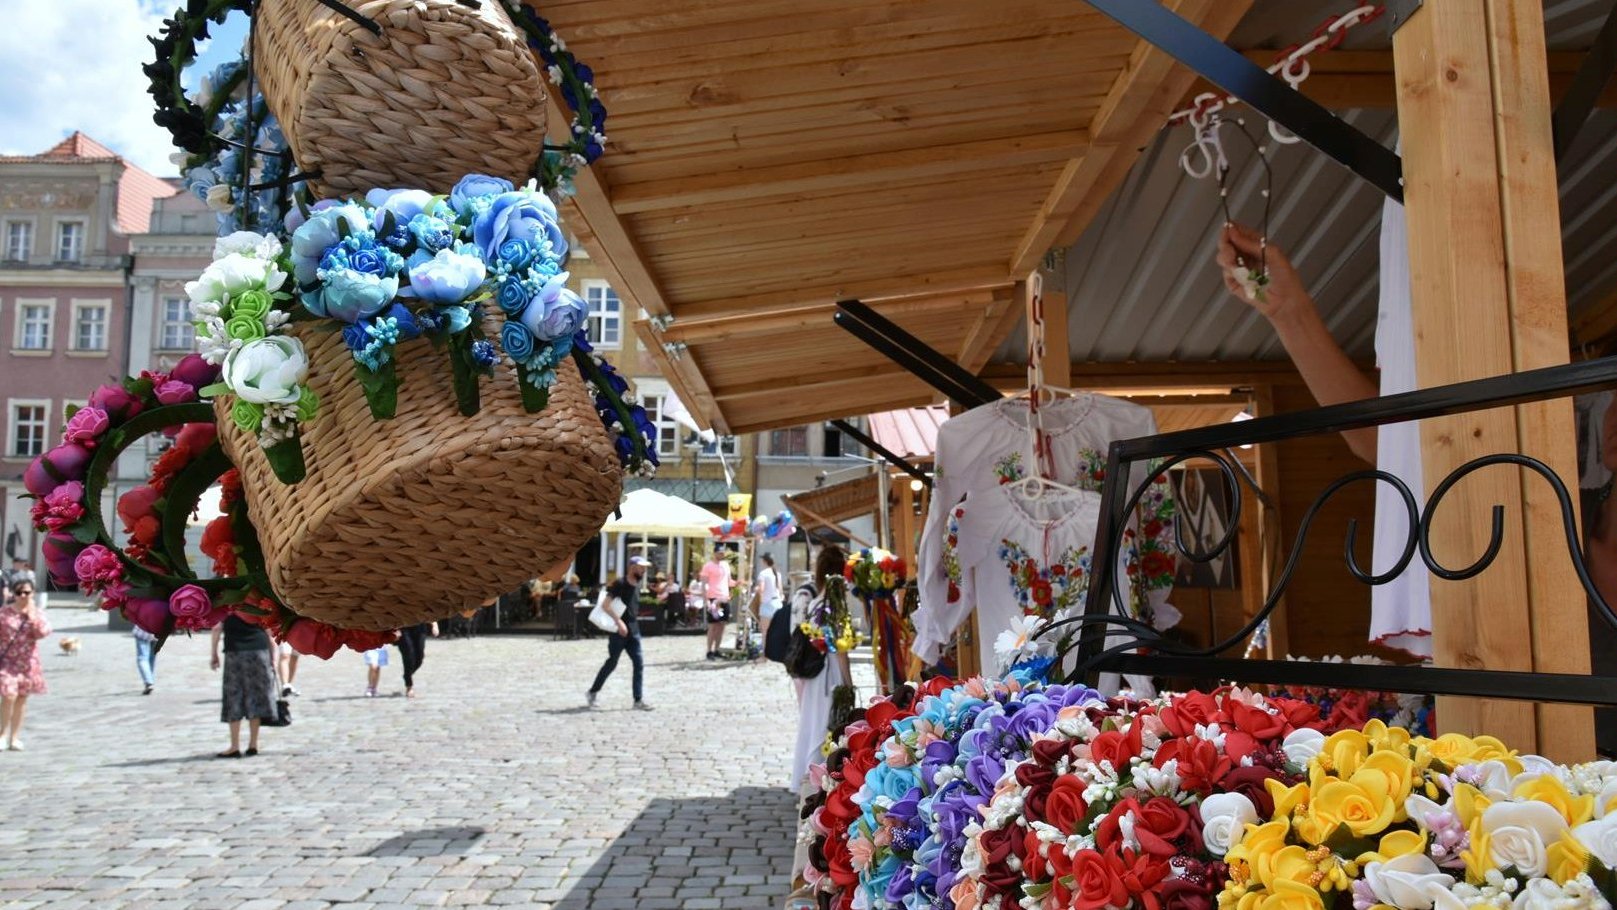 Zdjęcie przedstawia drewniany domek handlowy stojący na Starym Rynku. Na stoisku znajdują się bukiety ze sztucznych kwiatów (niektóre umieszczone zostały w wiklinowych koszykach) oraz bluzki w kwiatki. - grafika artykułu